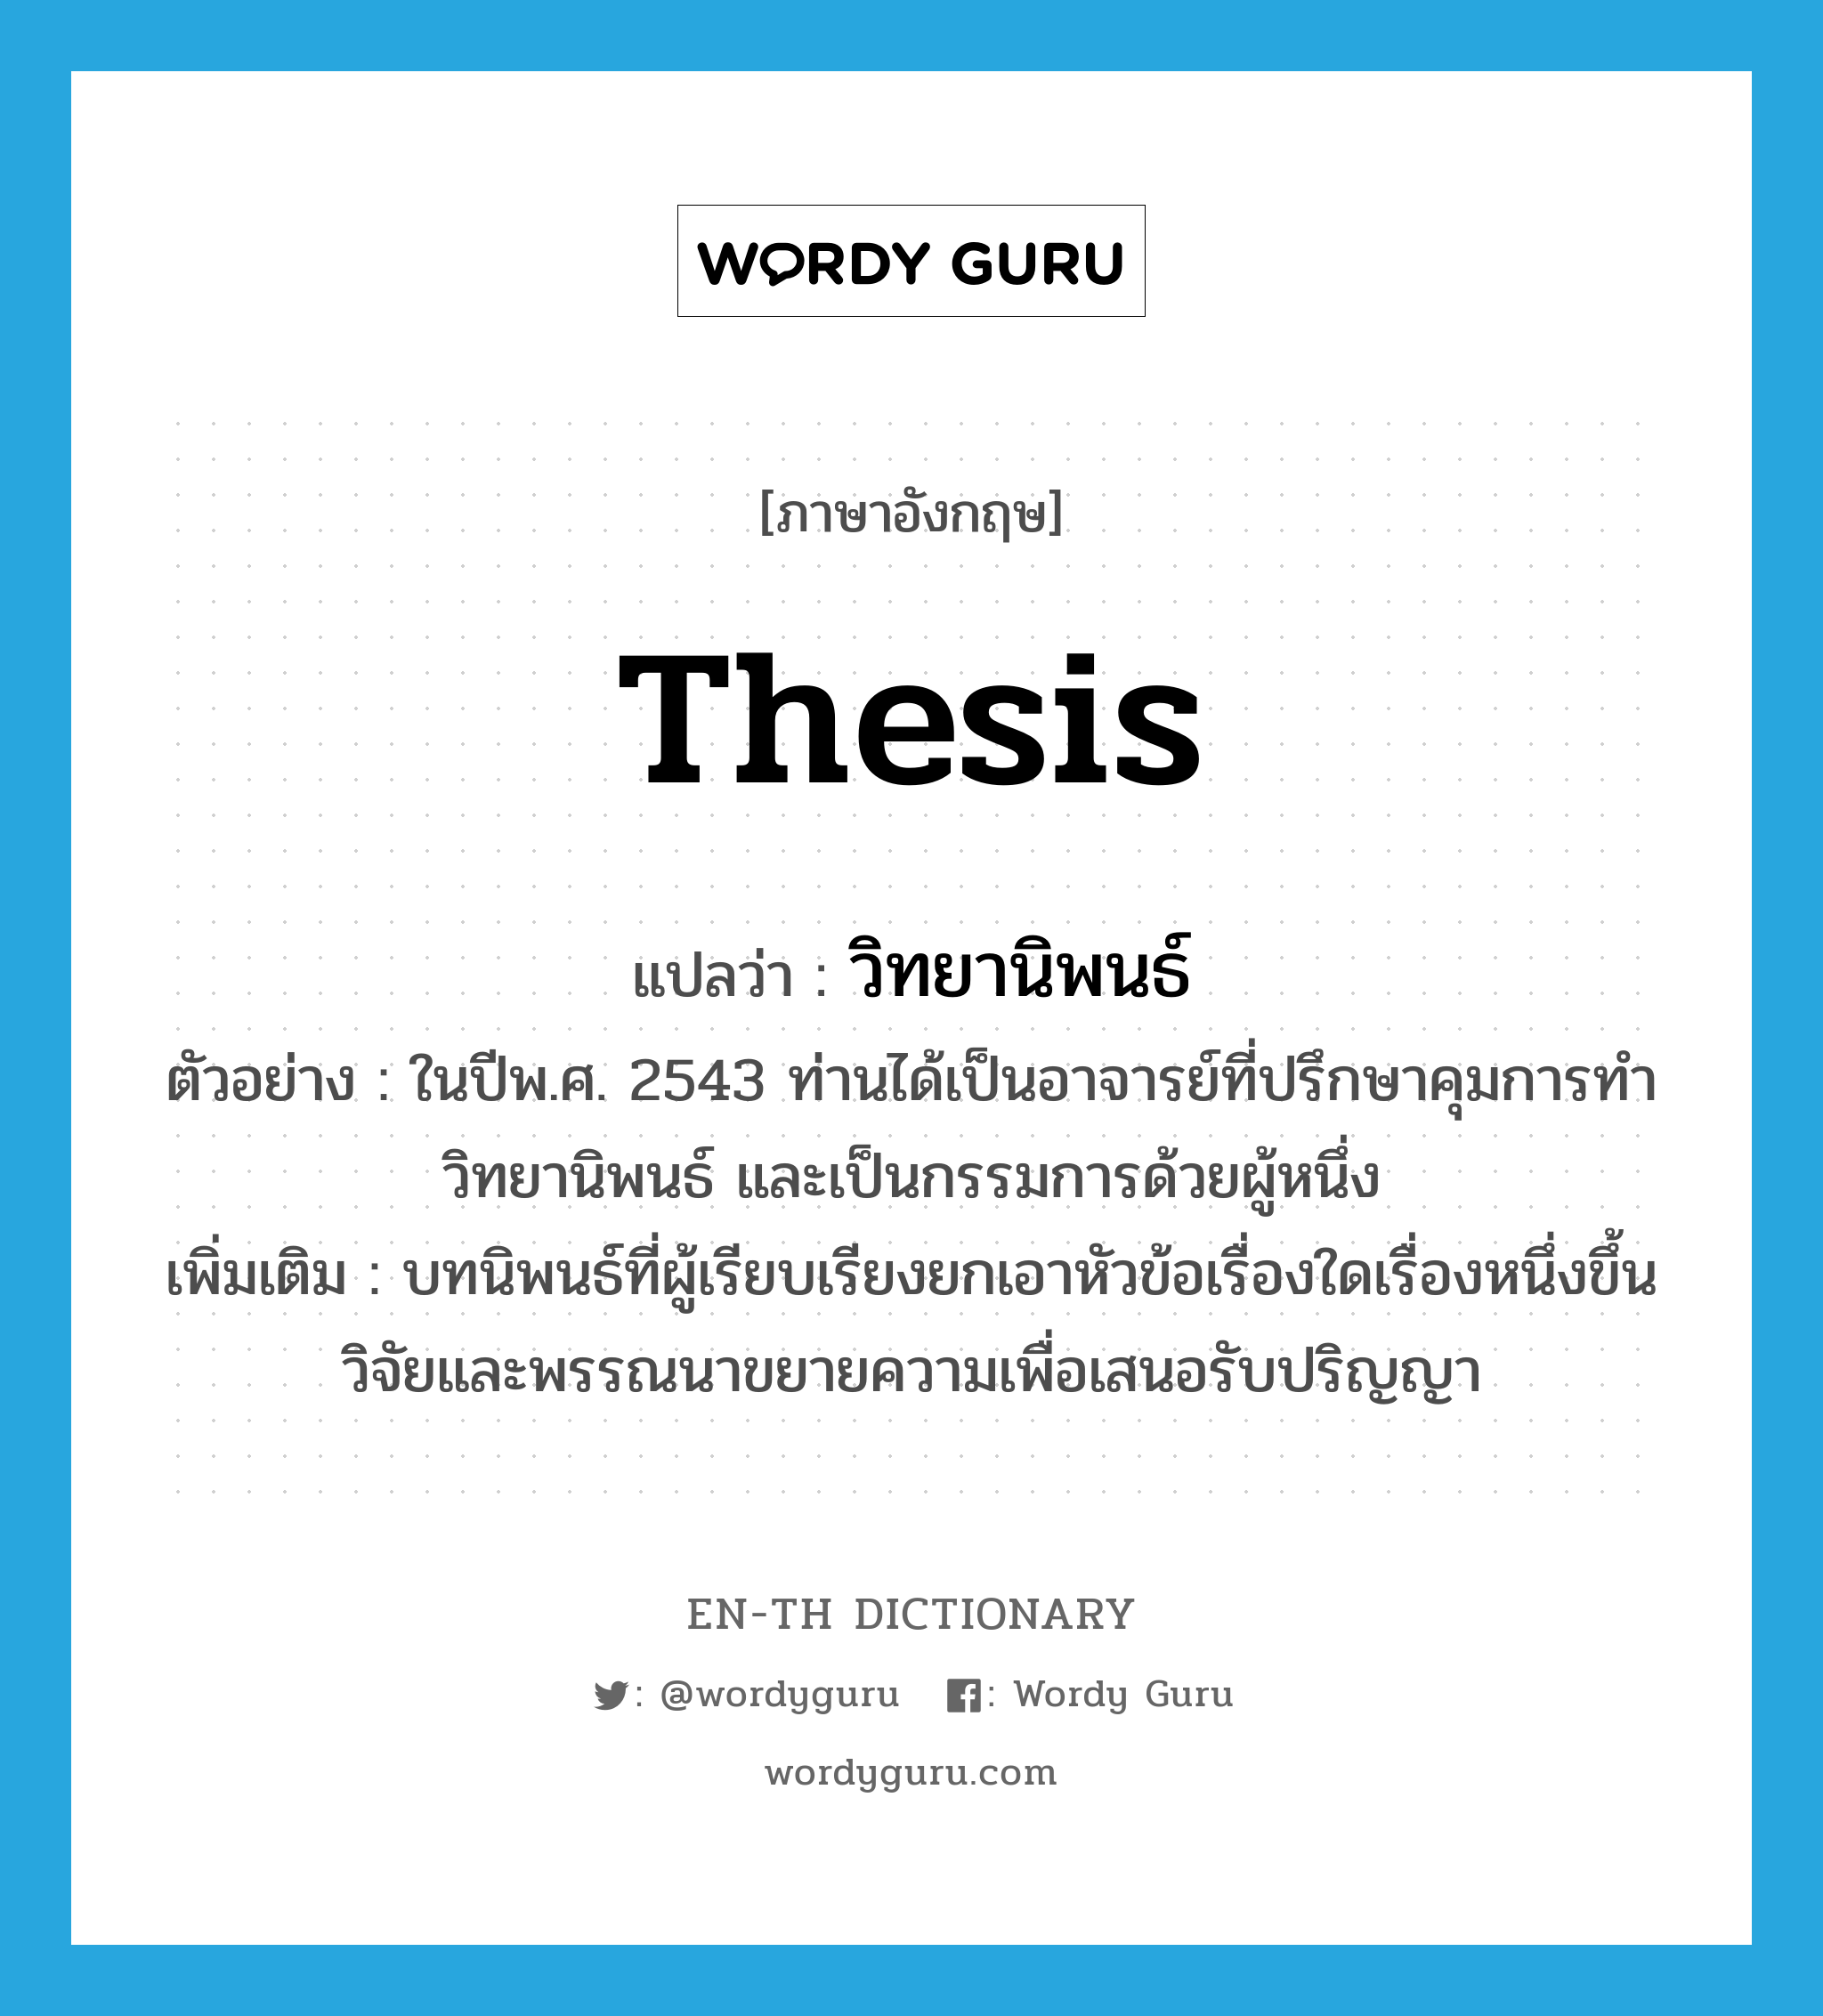 thesis แปลว่า?, คำศัพท์ภาษาอังกฤษ thesis แปลว่า วิทยานิพนธ์ ประเภท N ตัวอย่าง ในปีพ.ศ. 2543 ท่านได้เป็นอาจารย์ที่ปรึกษาคุมการทำวิทยานิพนธ์ และเป็นกรรมการด้วยผู้หนึ่ง เพิ่มเติม บทนิพนธ์ที่ผู้เรียบเรียงยกเอาหัวข้อเรื่องใดเรื่องหนึ่งขึ้นวิจัยและพรรณนาขยายความเพื่อเสนอรับปริญญา หมวด N